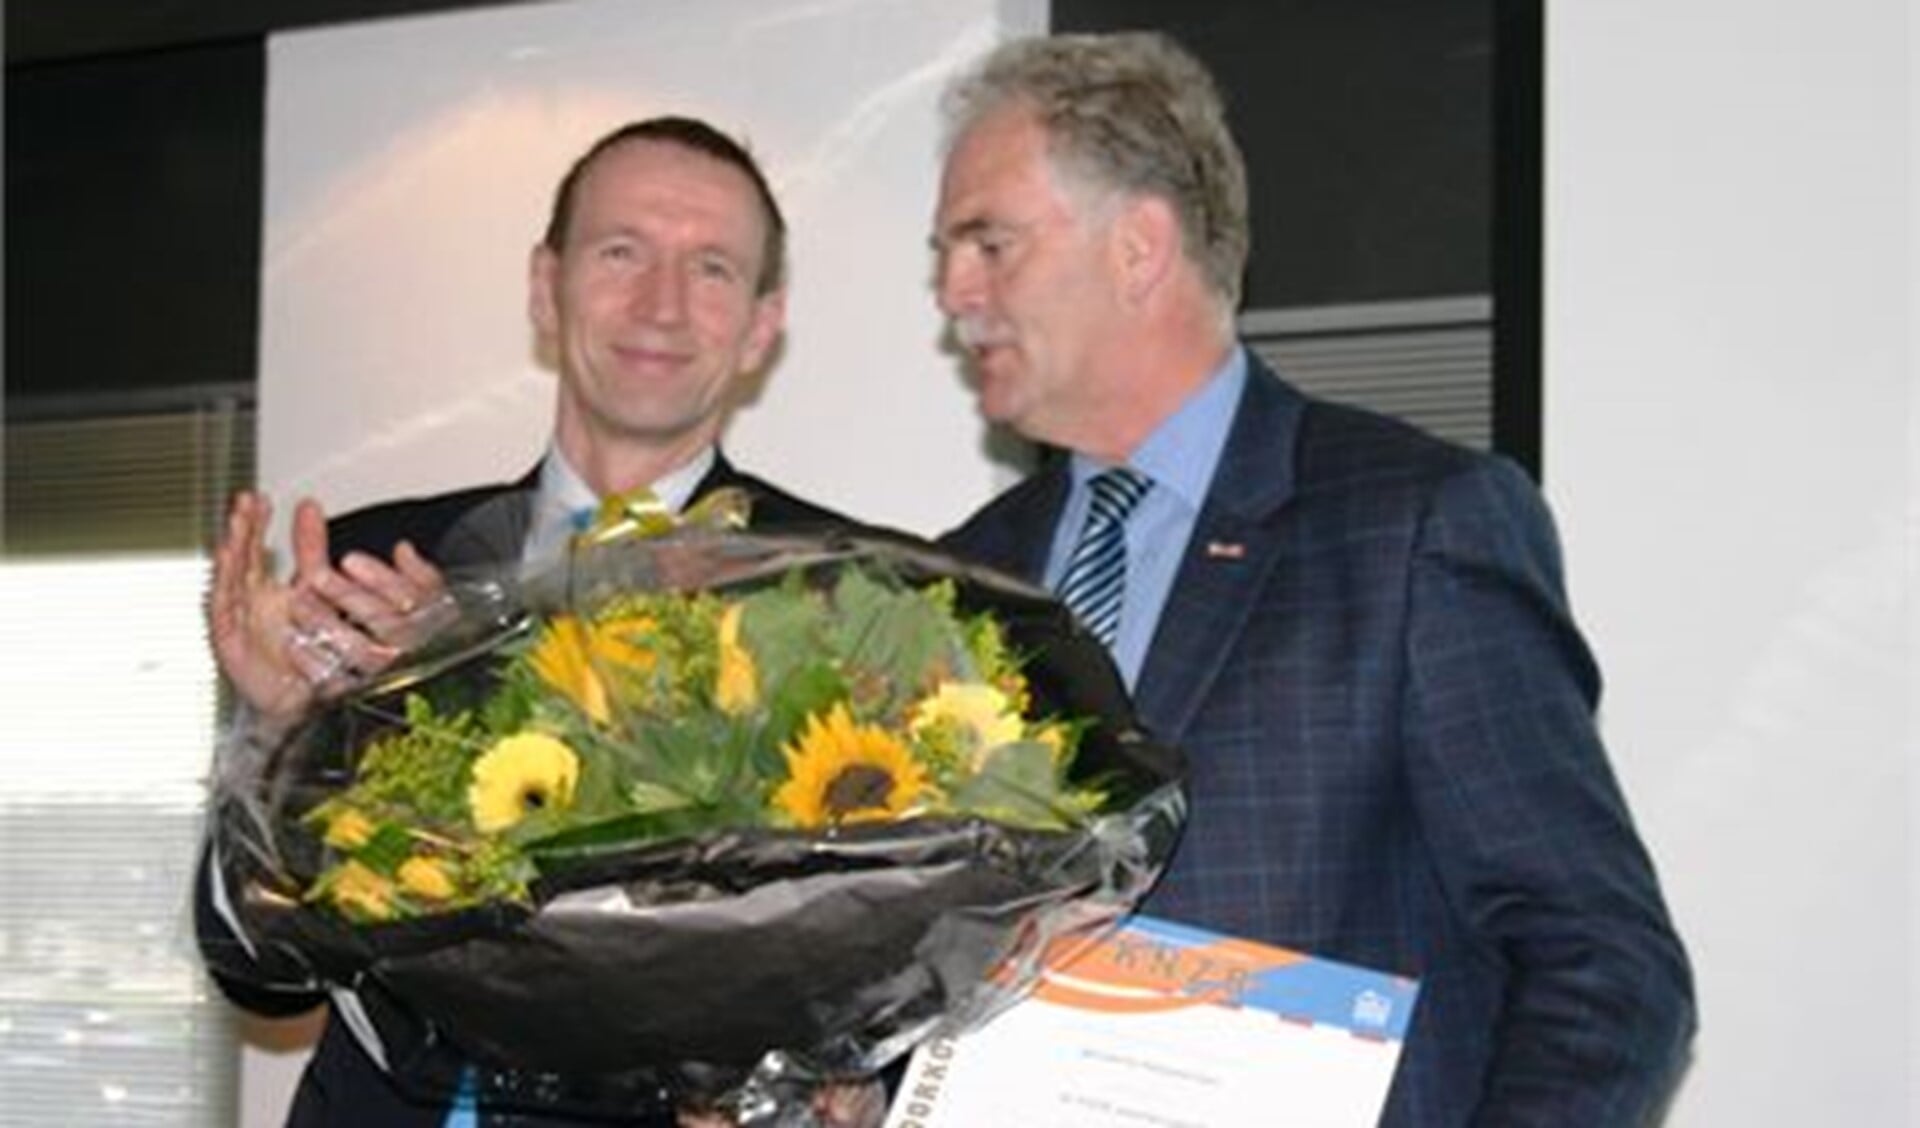 Bondsvoorzitter Erik van Heijningen en wethouder Veerman van de gemeente Alblasserdam met de KNZB waarderingsprijs 2012.